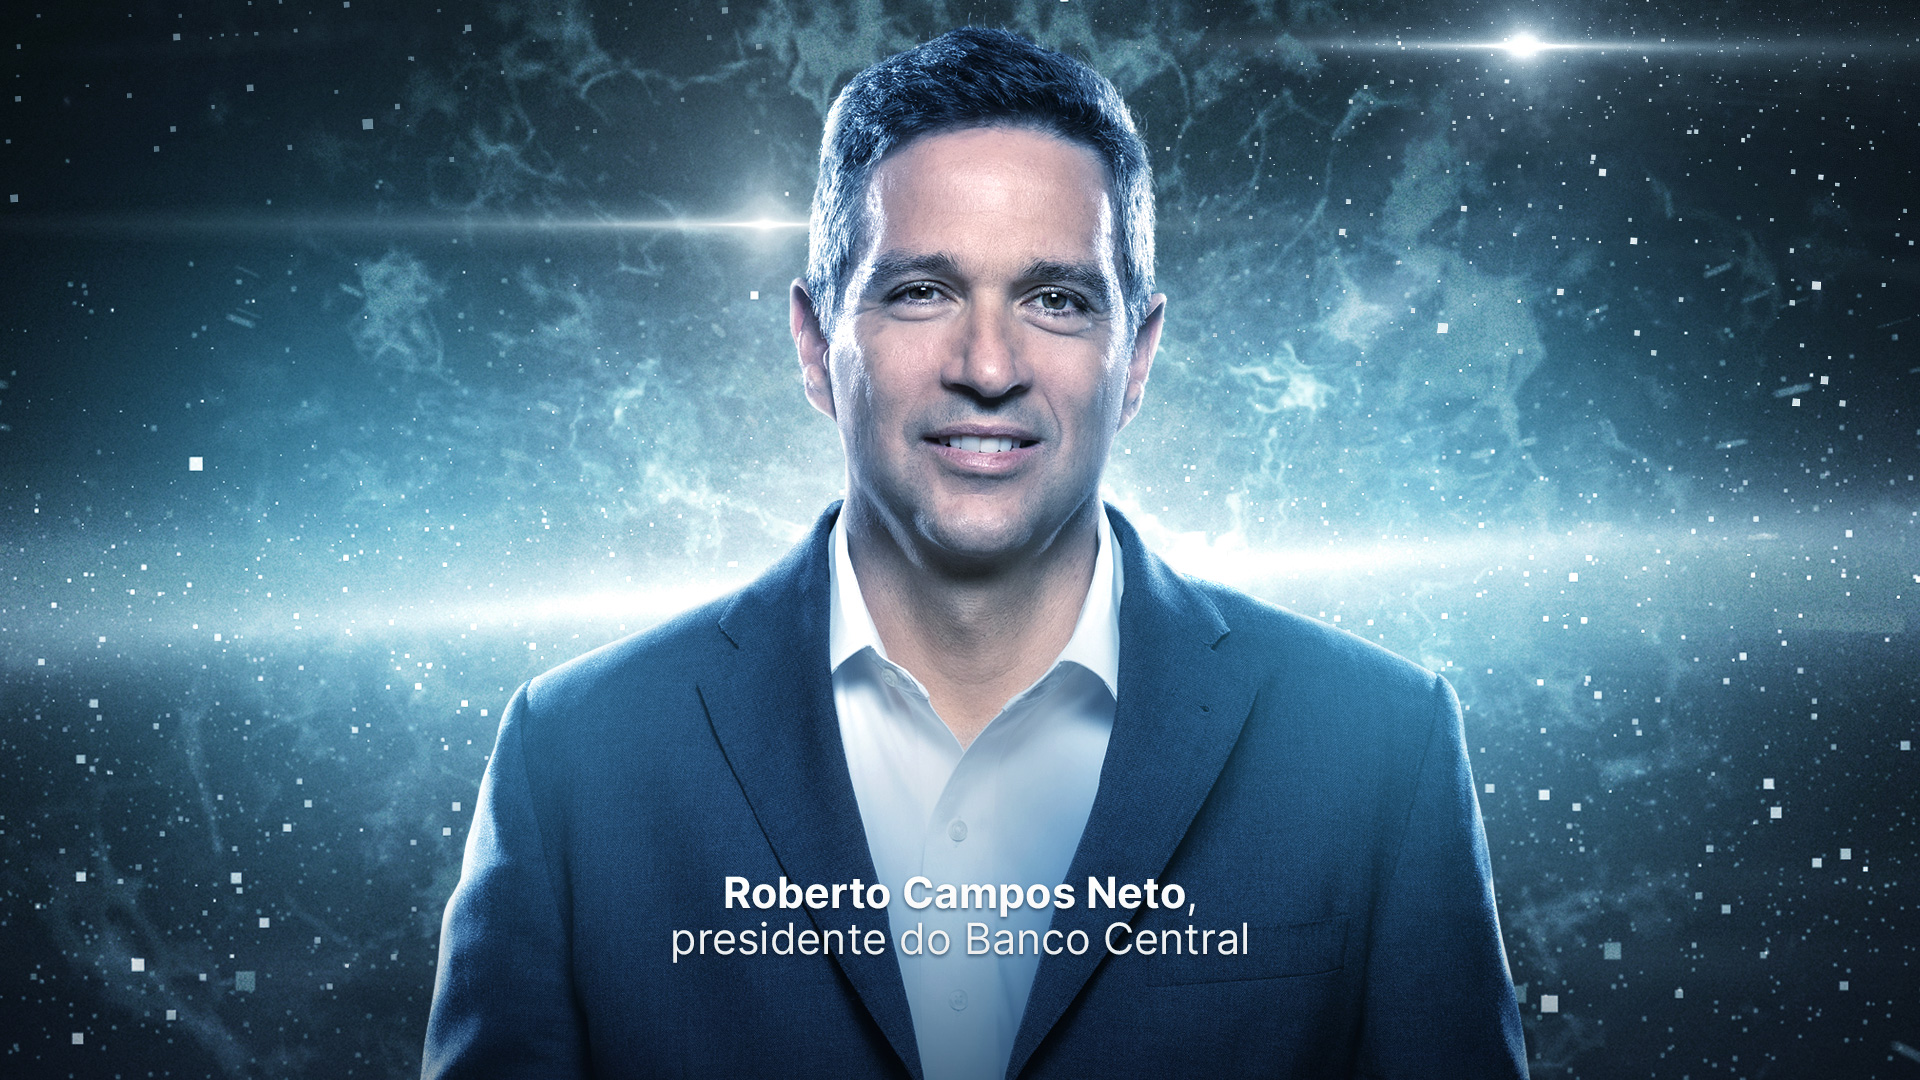 Roberto Campos Neto Banco Central